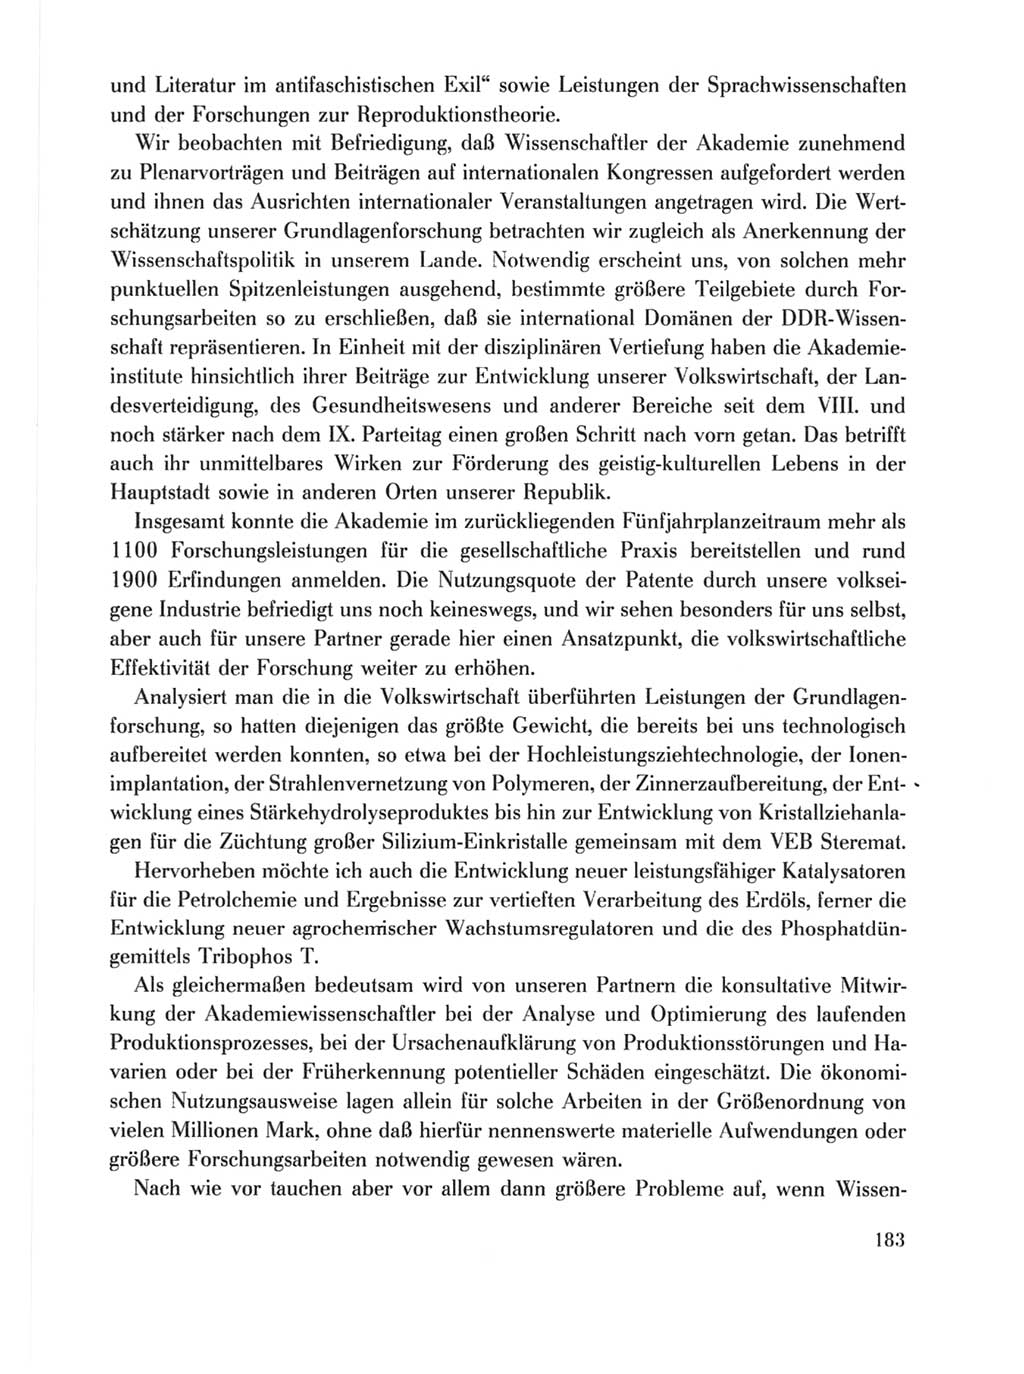 Protokoll der Verhandlungen des Ⅹ. Parteitages der Sozialistischen Einheitspartei Deutschlands (SED) [Deutsche Demokratische Republik (DDR)] 1981, Band 1, Seite 183 (Prot. Verh. Ⅹ. PT SED DDR 1981, Bd. 1, S. 183)